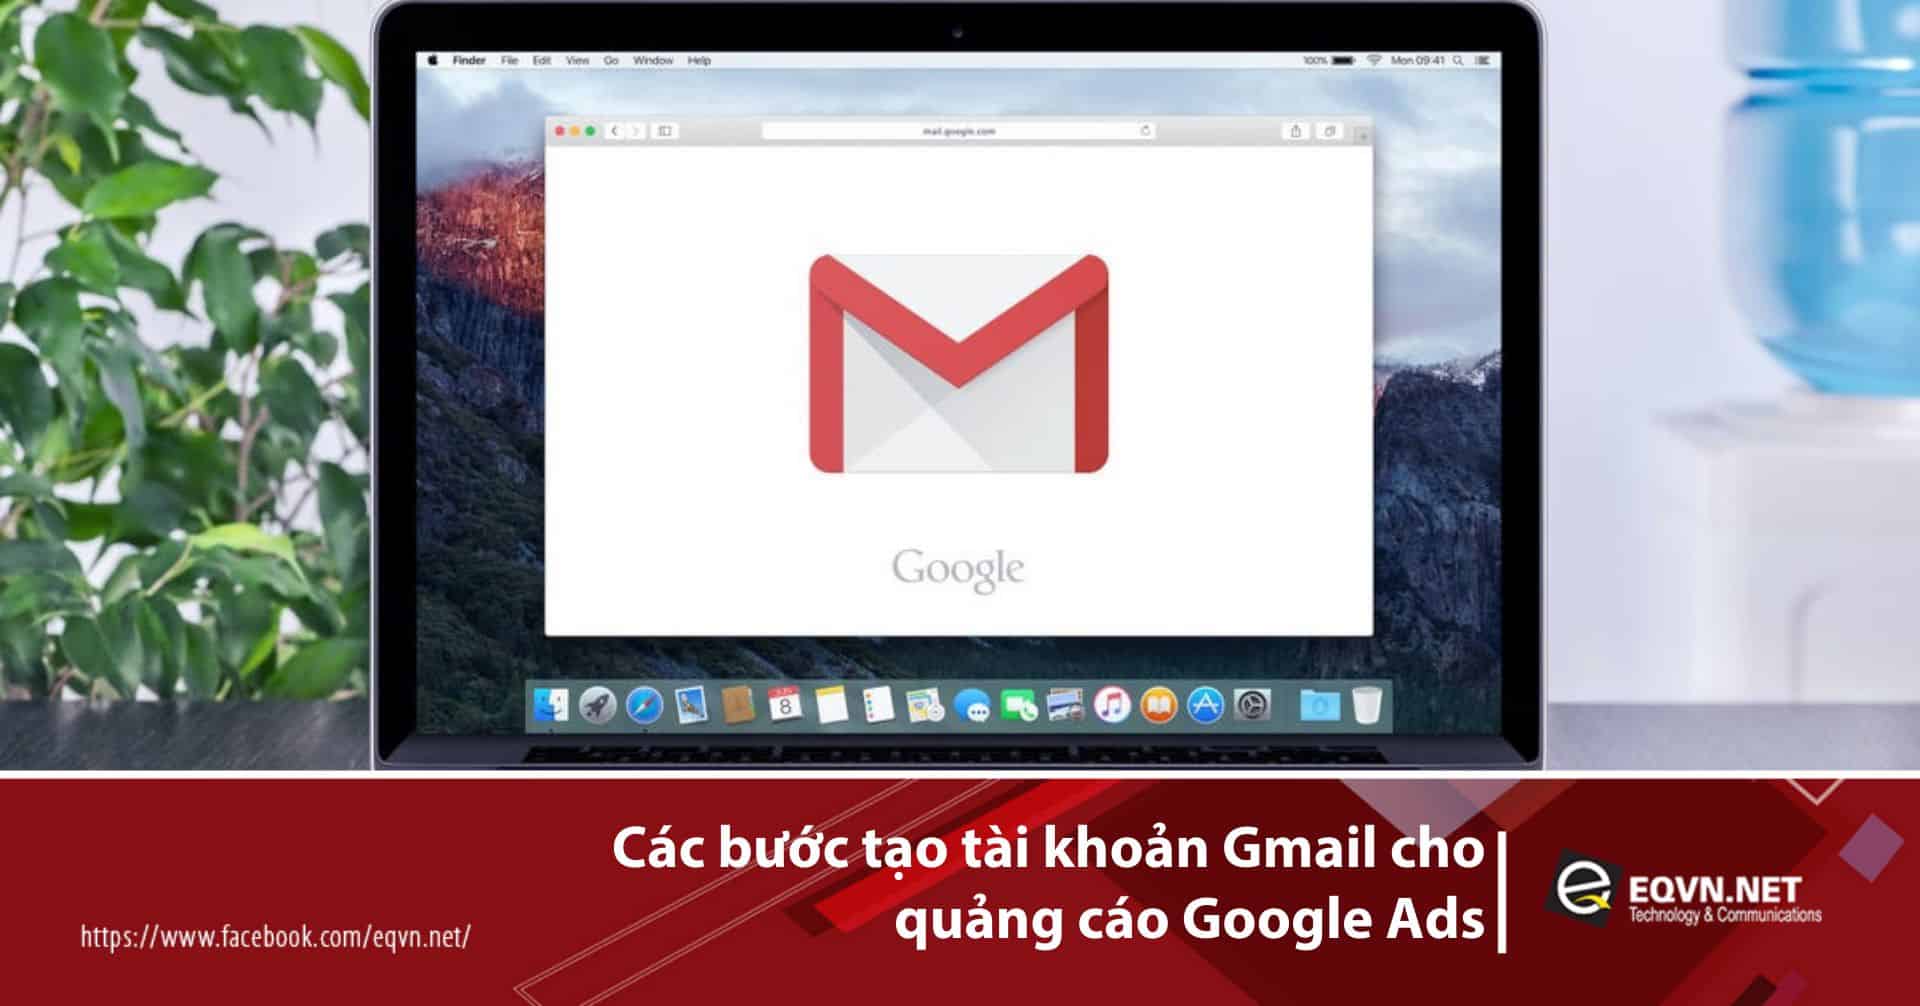 Các bước tạo tài khoản Gmail cho quảng cáo Google Ads